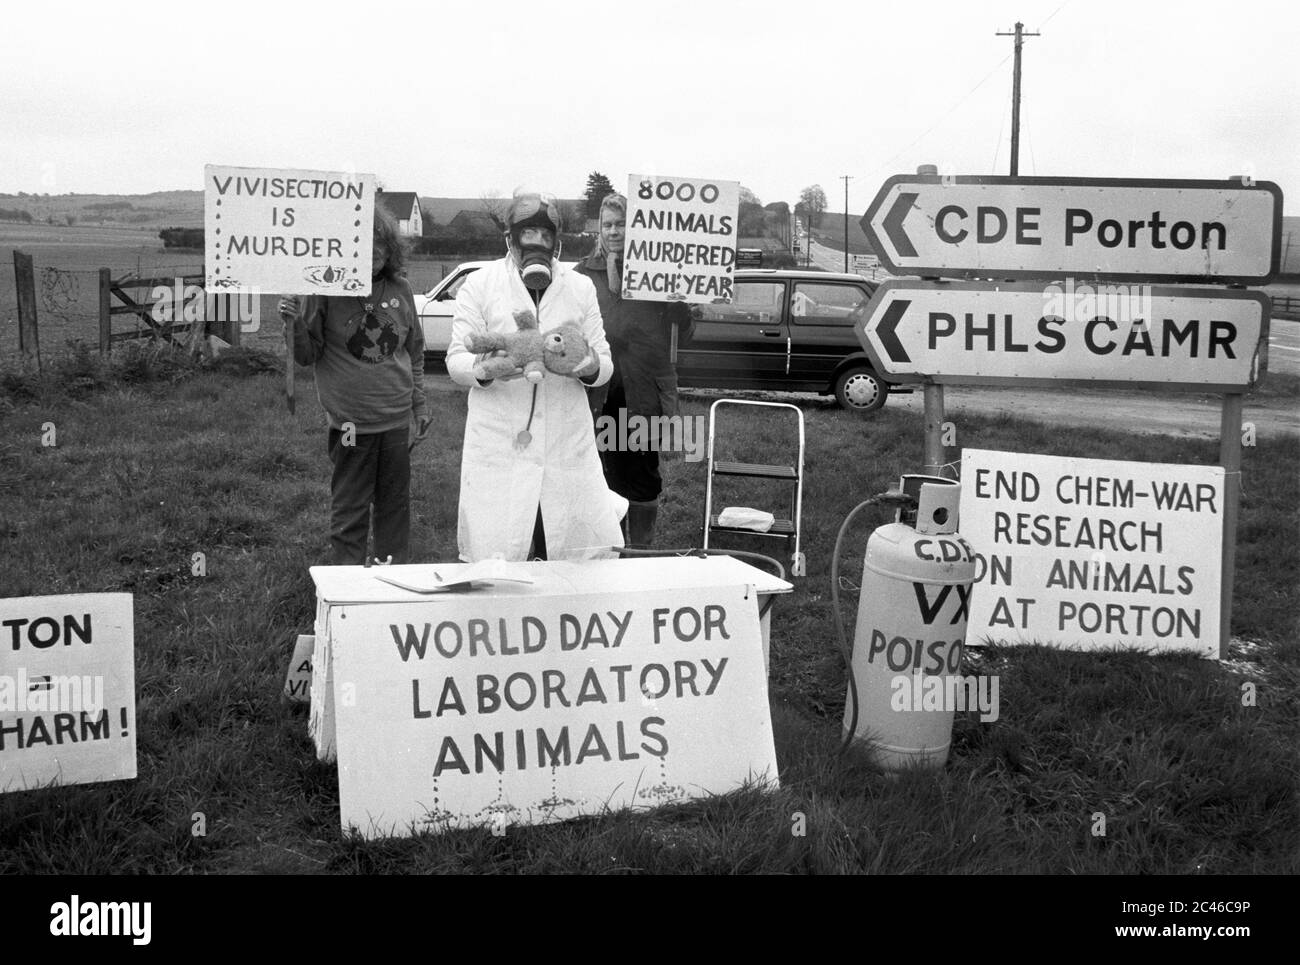 Des manifestants anti-vivisectionnistes se réunissent à l'entrée de l'établissement de défense civile Porton Down dans le Wiltshire. Royaume-Uni. Vers 1992. Banque D'Images